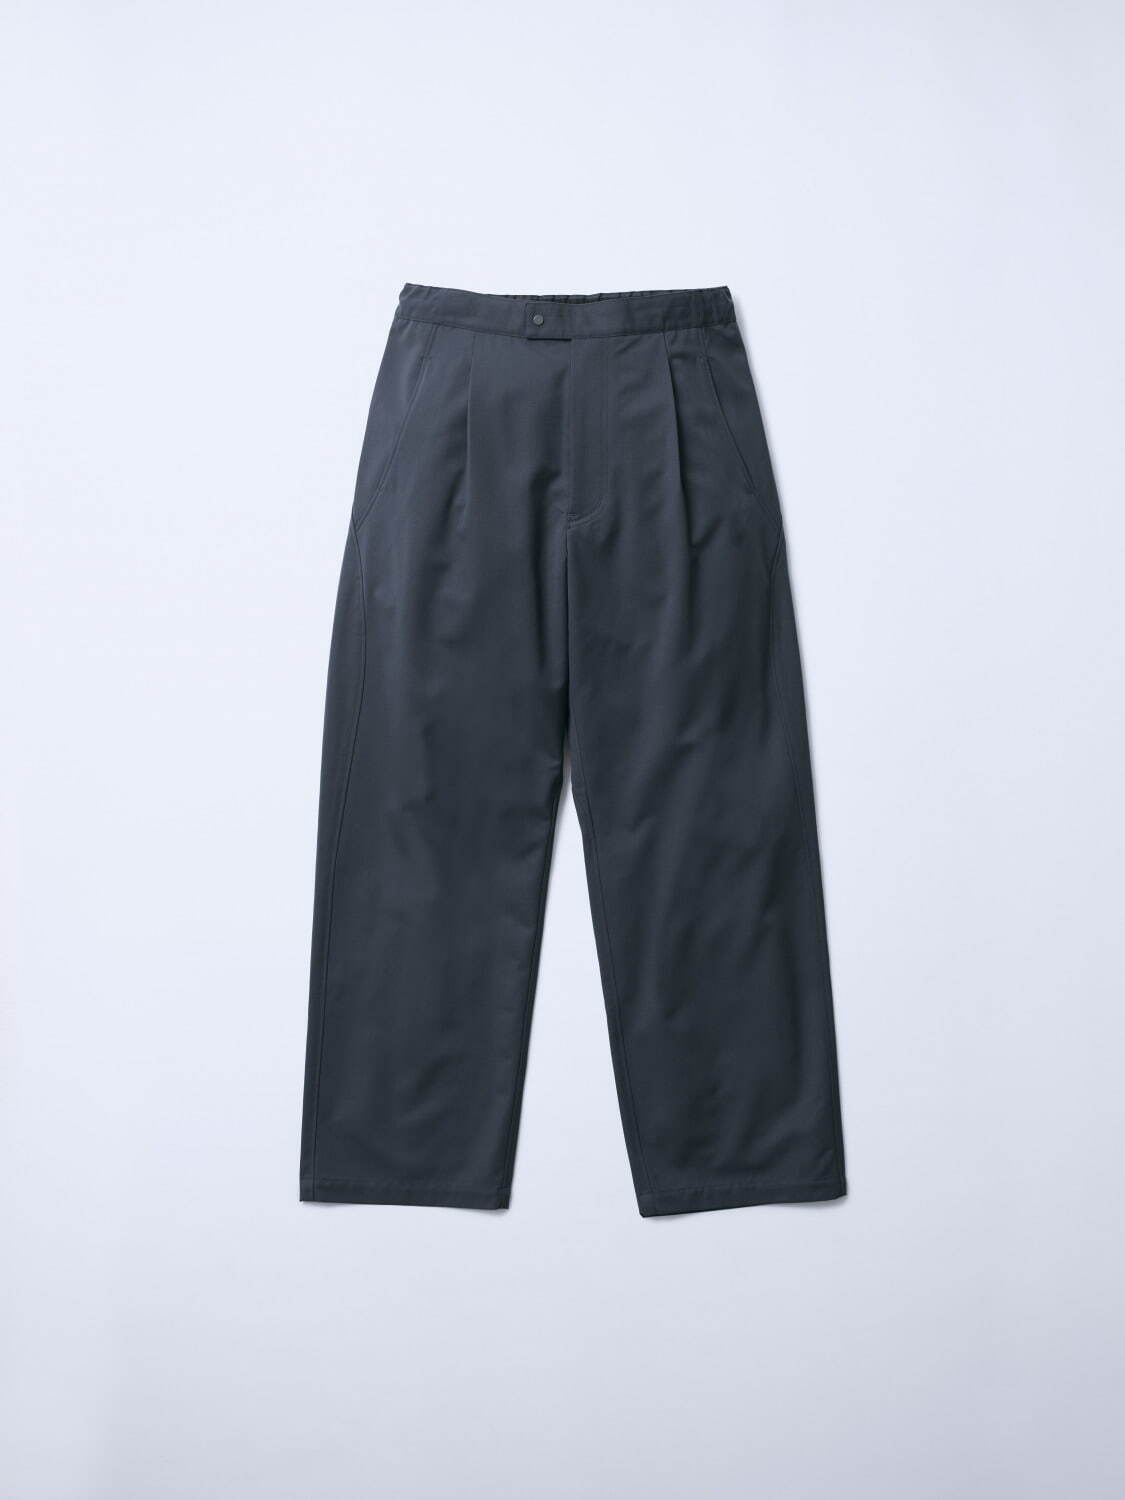 Wool Wind Shell Pants 60,500円